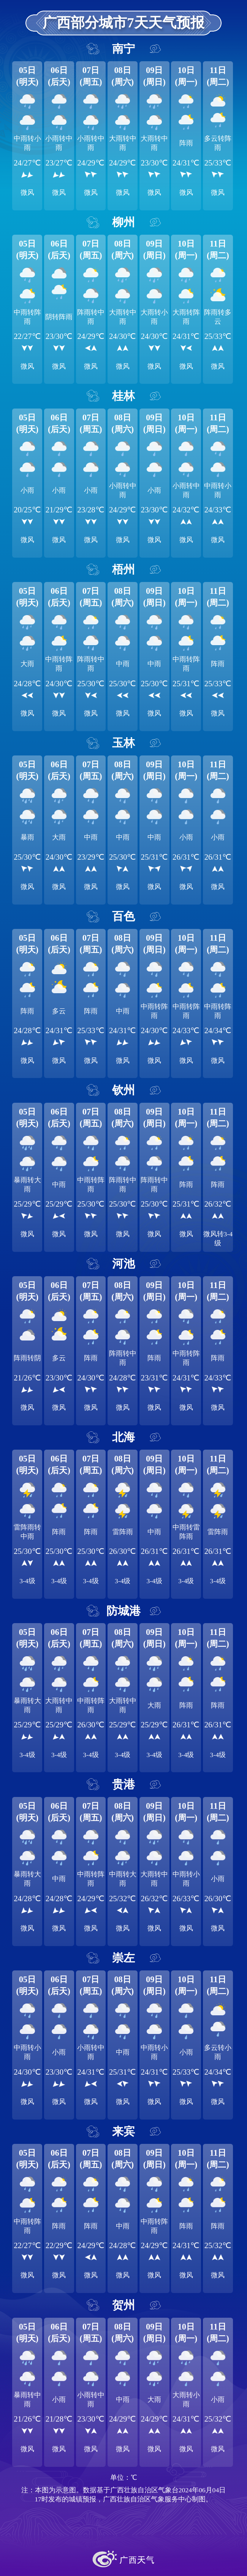 广西部分城市7天天气预报北部湾海面:今天晚上到明天白天,暴雨,偏南风